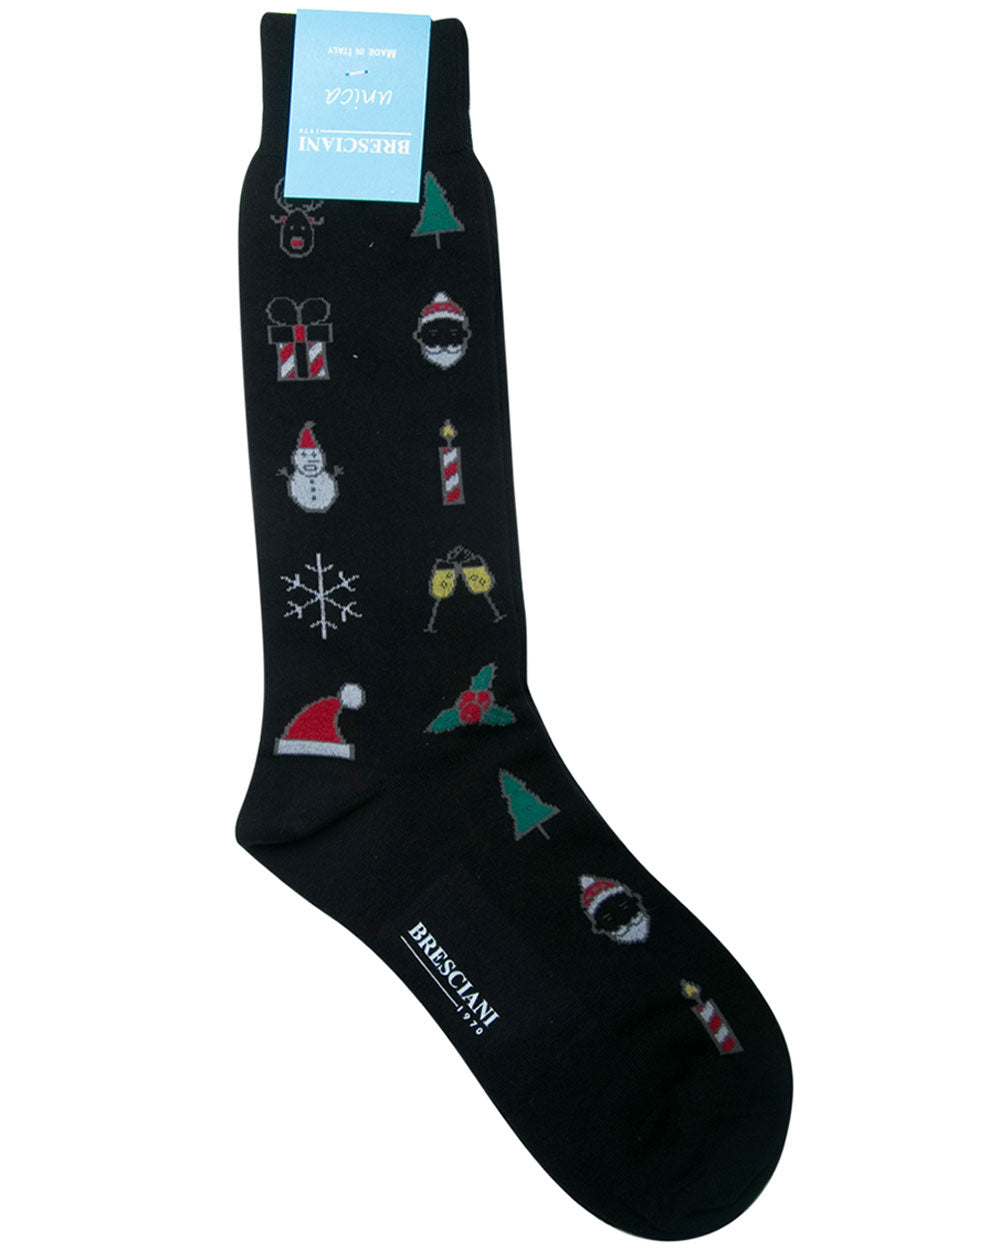 Santa Christmas Socks in Black